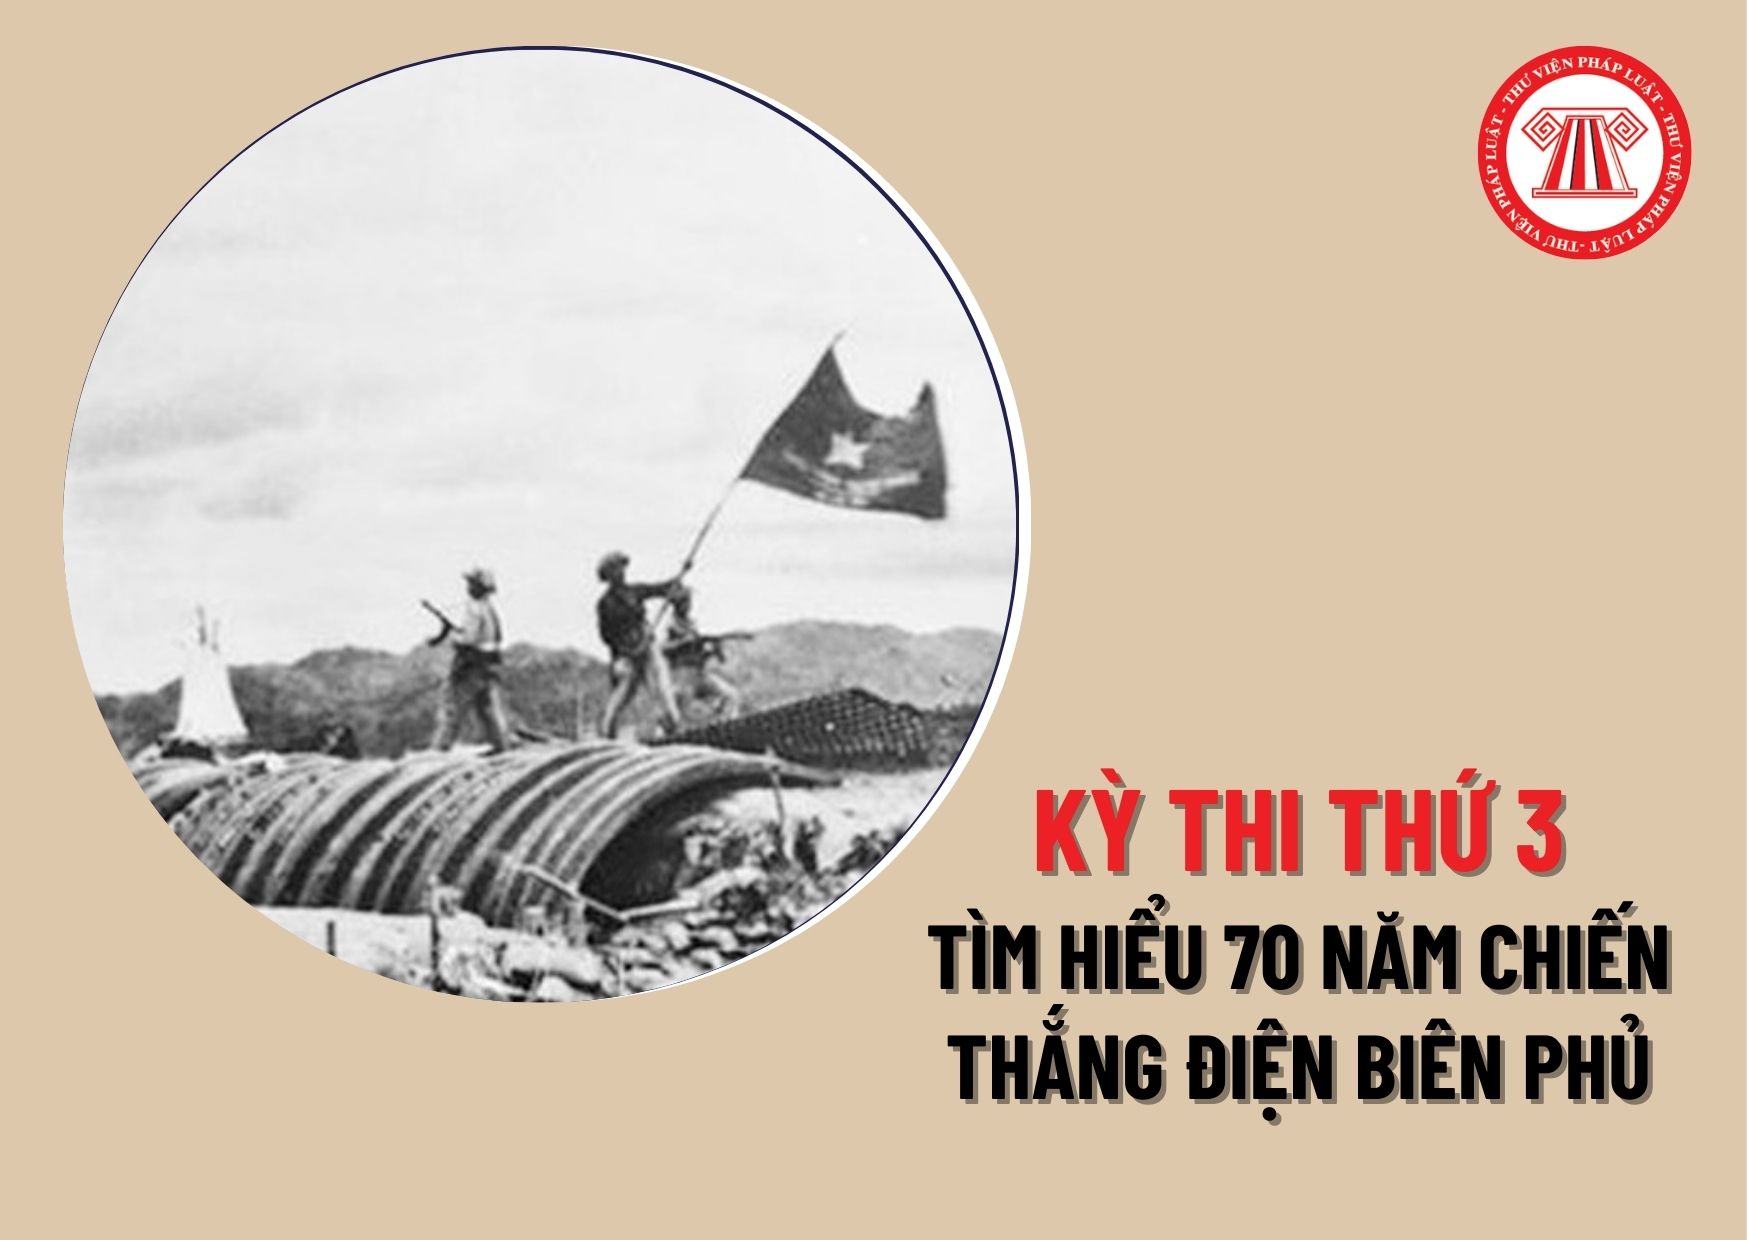 Kỳ thi thứ 3 về tìm hiểu 70 năm chiến thắng Điện Biên Phủ và 65 năm Ngày mở đường Hồ Chí Minh - Ngày truyền thống Bộ đội Trường Sơn diễn ra khi nào?